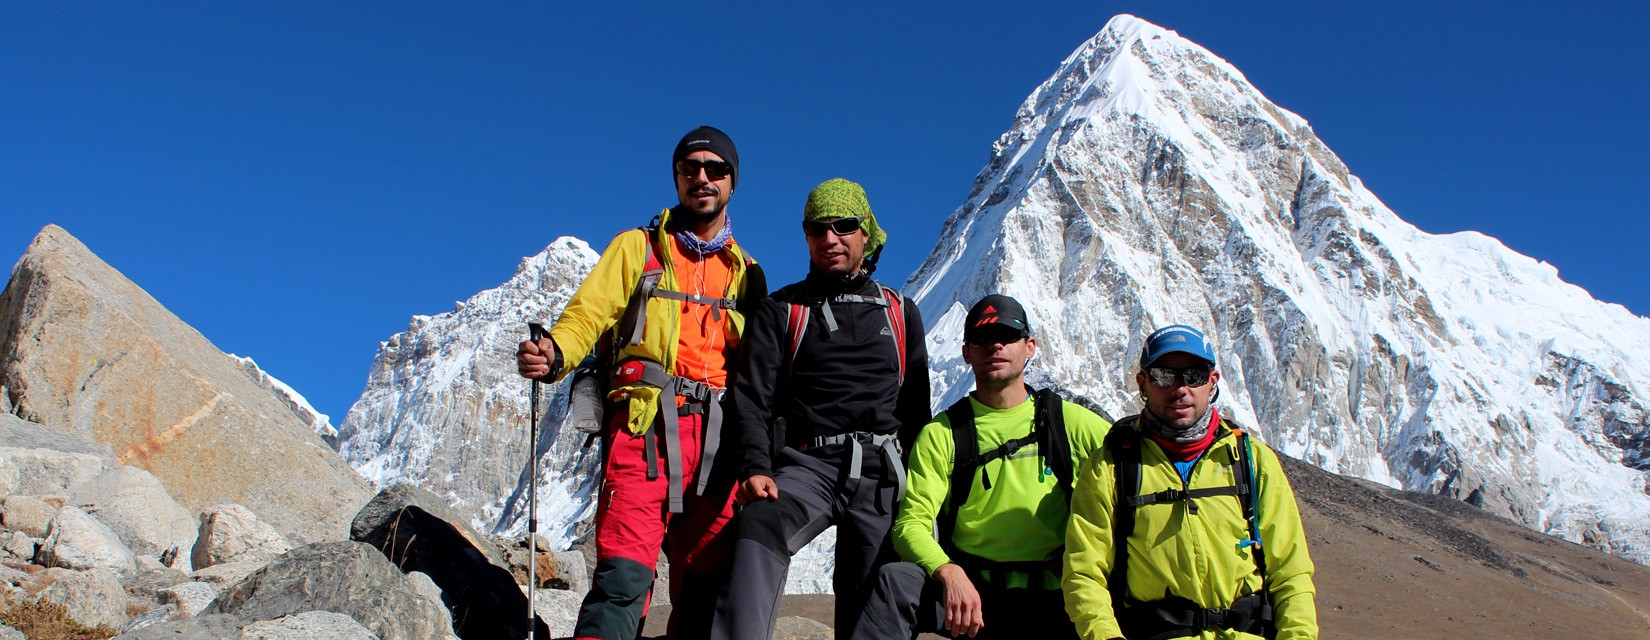 Everest Base Camp - 5,380 m (17,600 ft)